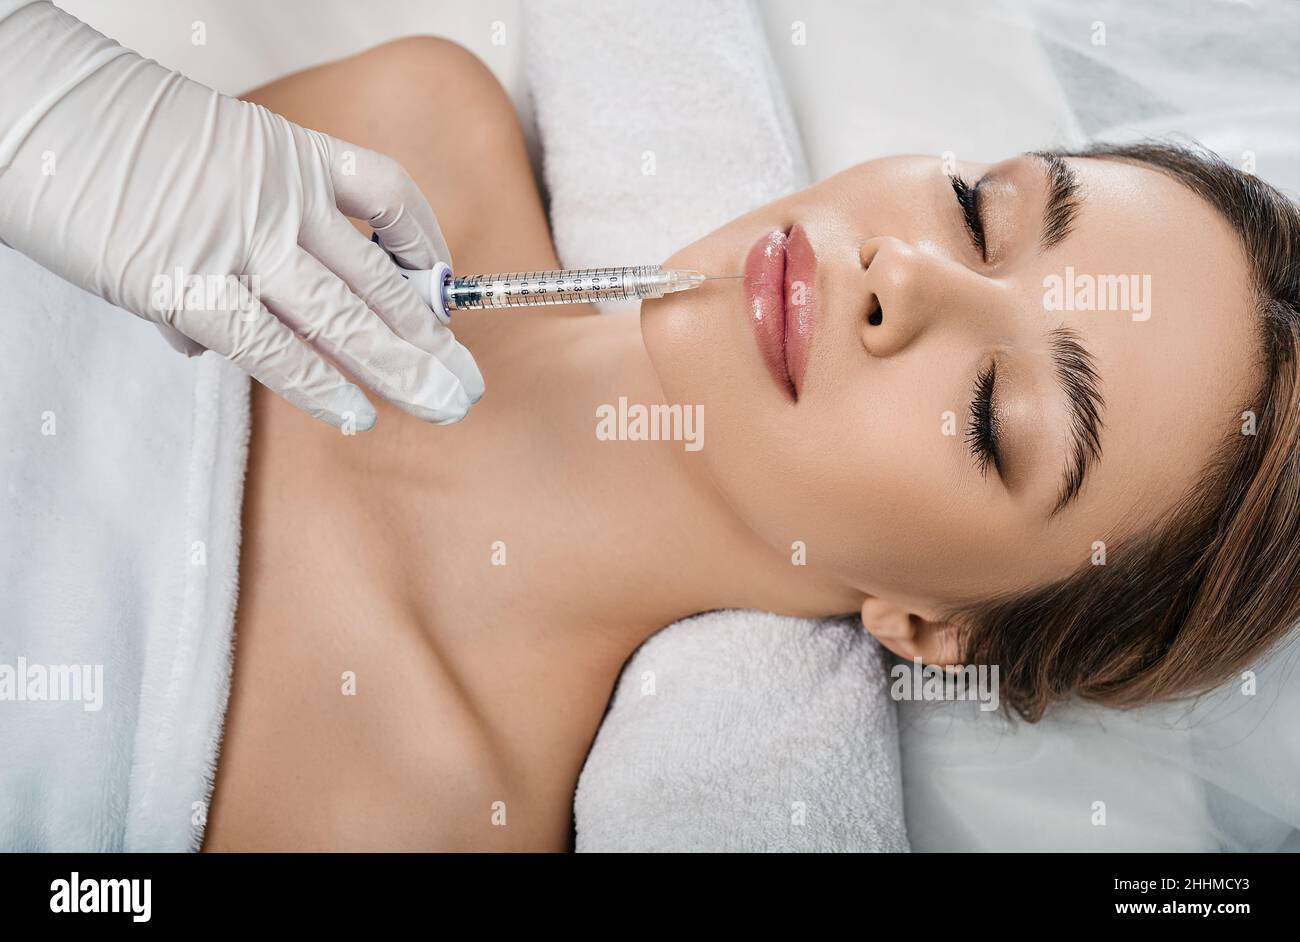 Frau während des Eingriffs Lippenvergrößerung in Kosmetologie Klinik mit Kosmetikerin. Filler Injektion für schöne weibliche Lippen Augmentation mit Hyaluron, Stockfoto